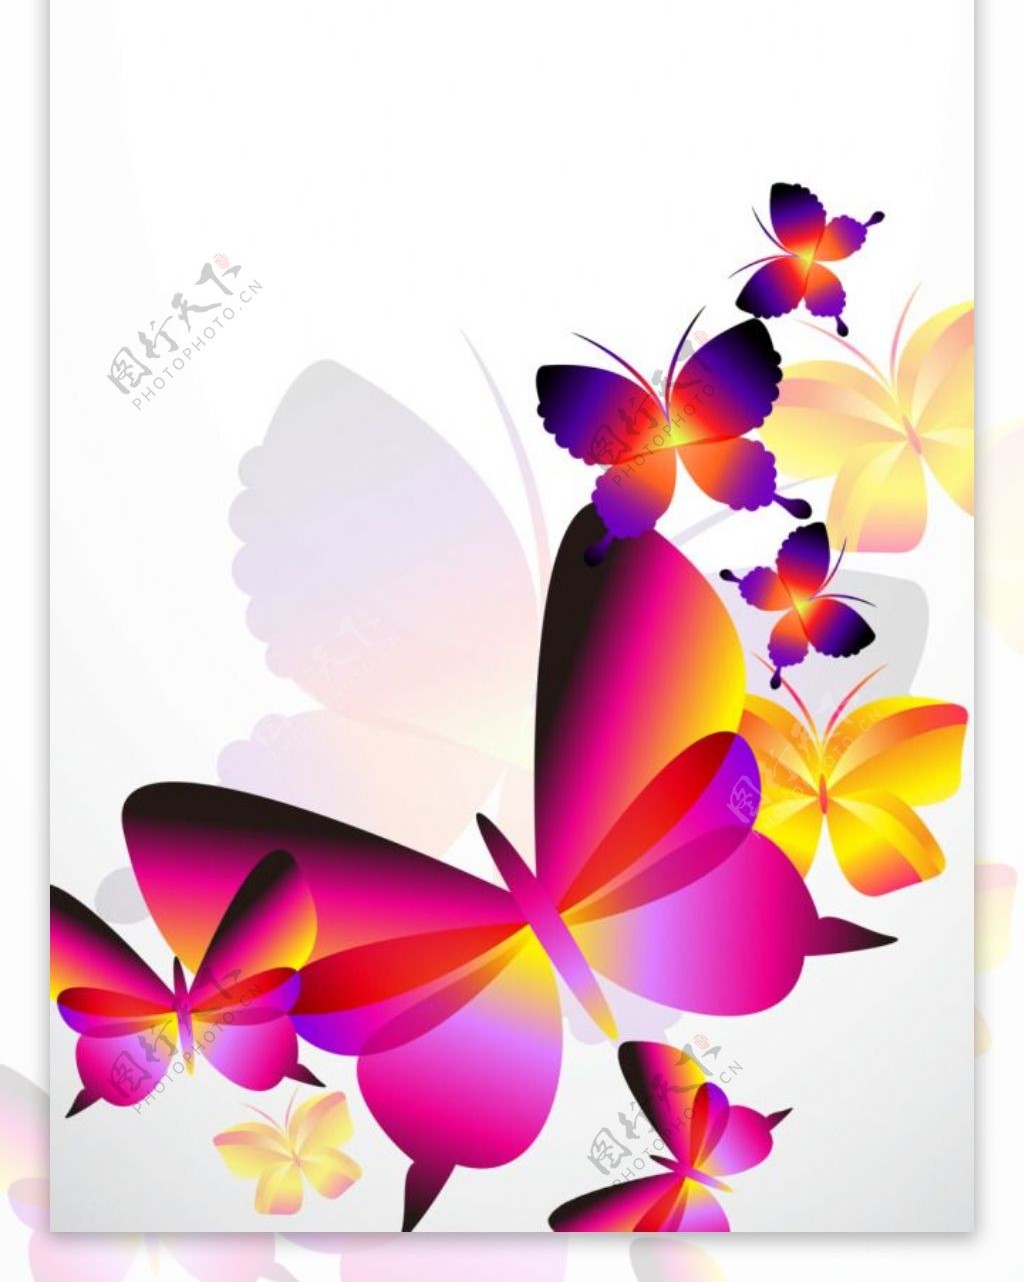 精美七彩蝴蝶展架设计模板素材海报画面素材